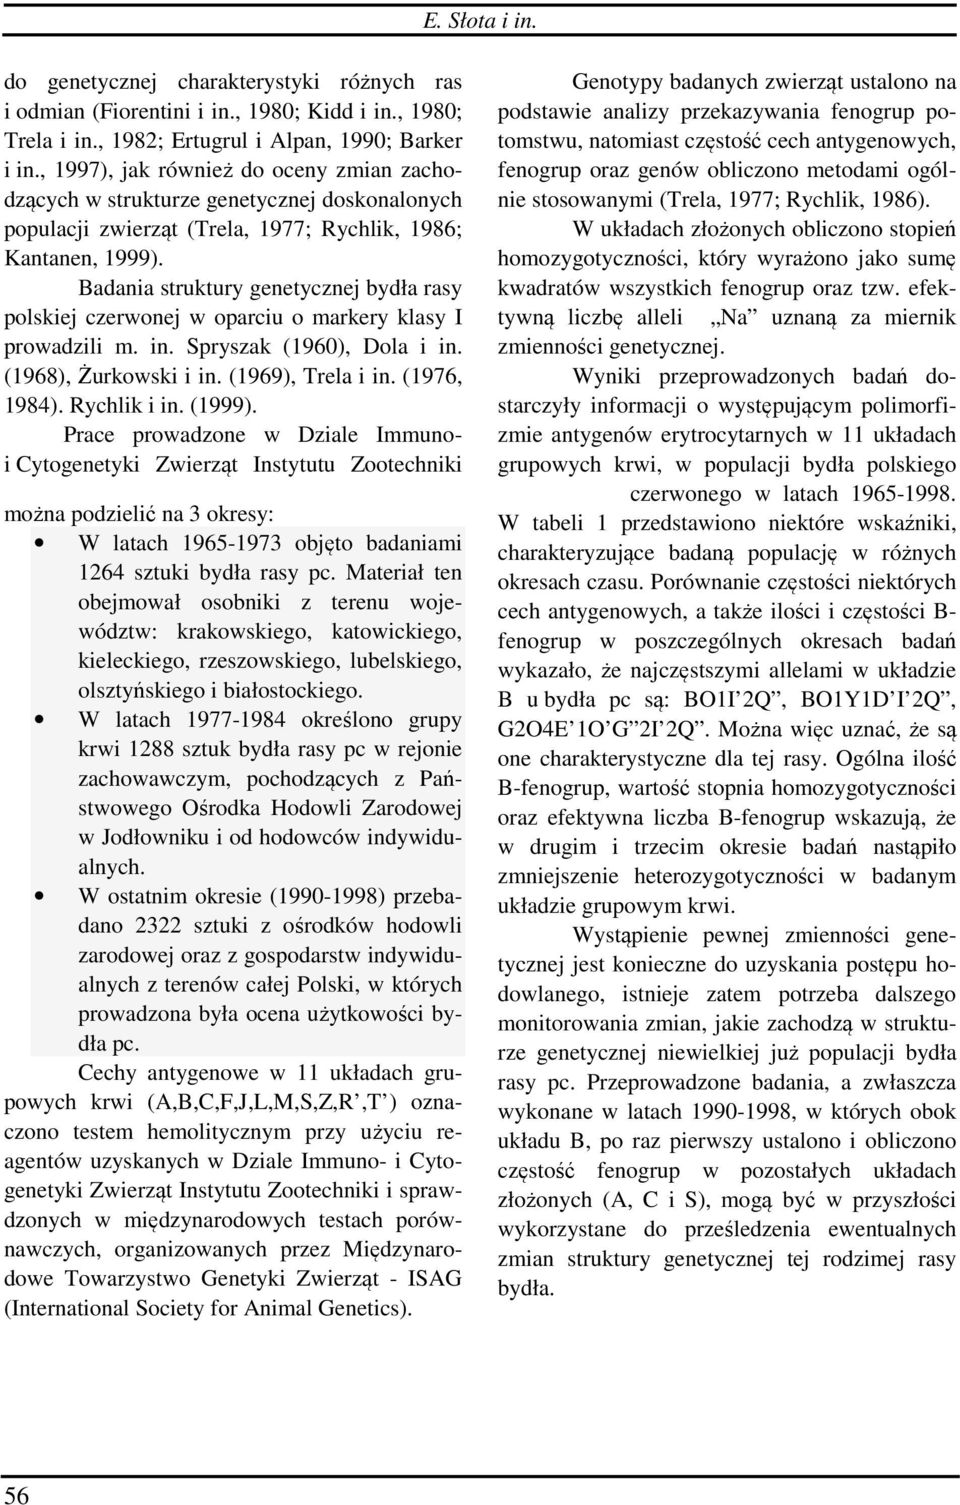 Badania struktury genetycznej bydła rasy polskiej czerwonej w oparciu o markery klasy I prowadzili m. in. Spryszak (1960), Dola i in. (1968), Żurkowski i in. (1969), Trela i in. (1976, 1984).